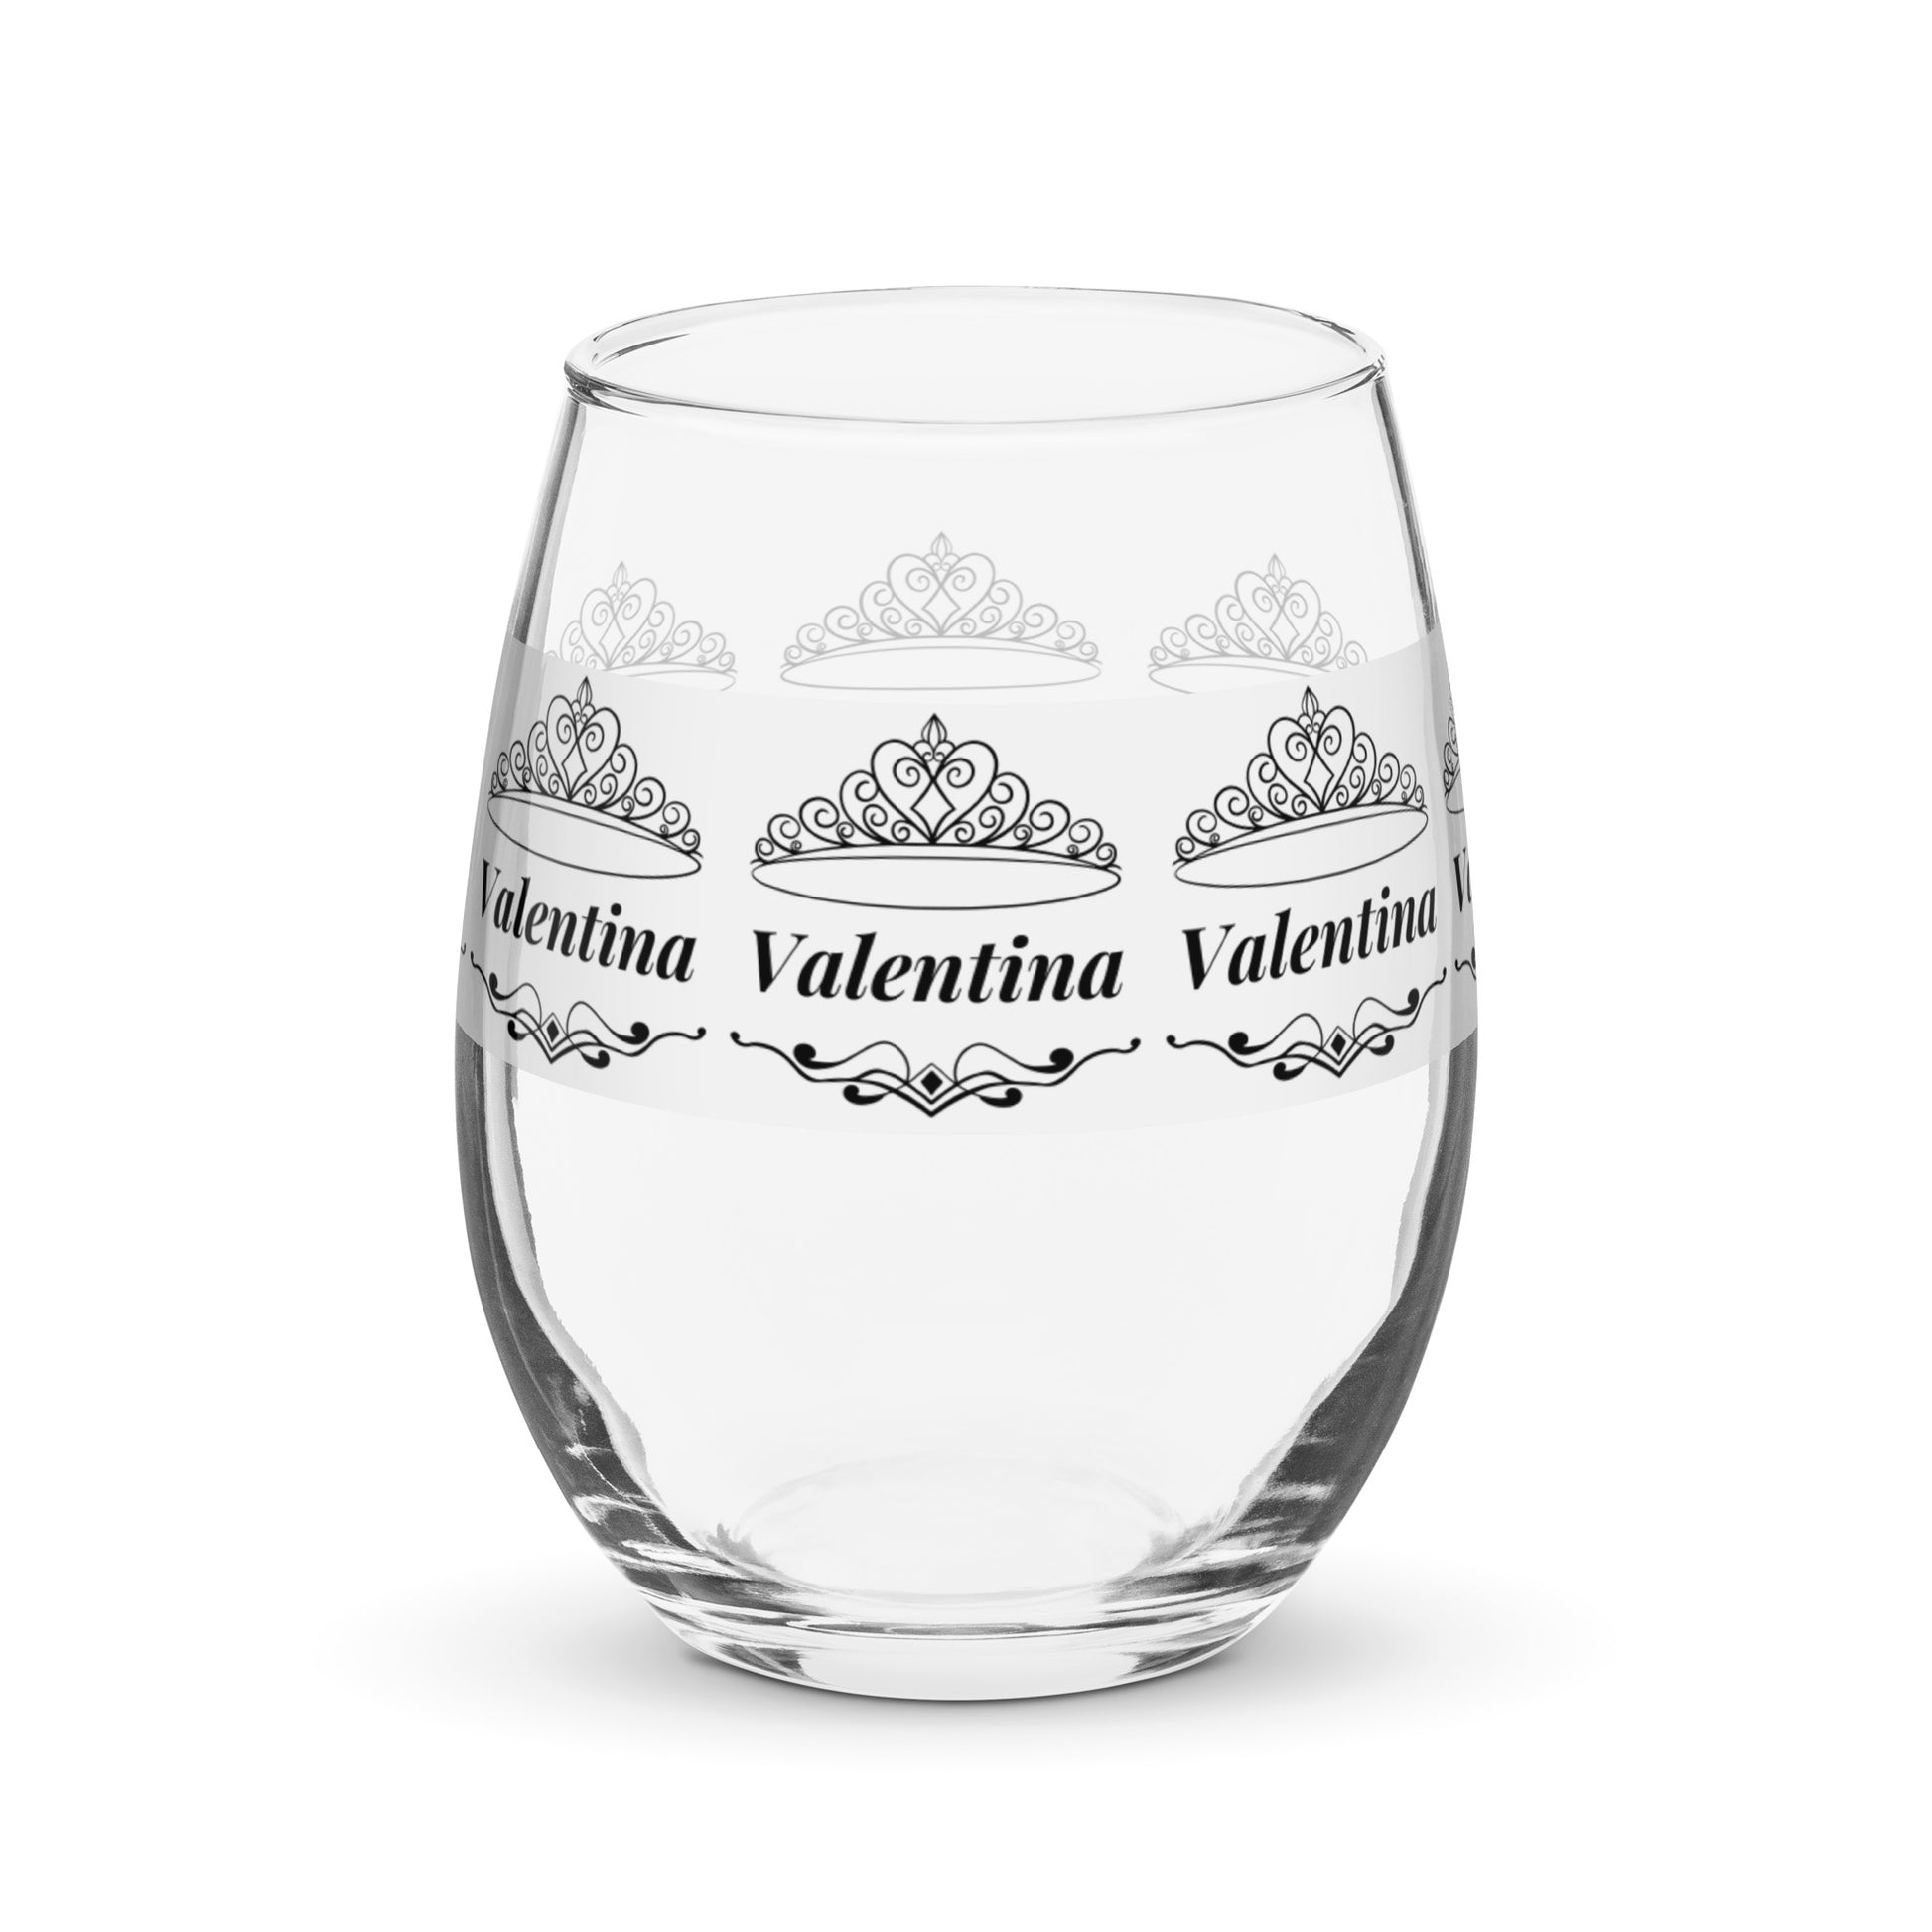 nombre copa de vino copa de vino personalizada copa de vino Valentina